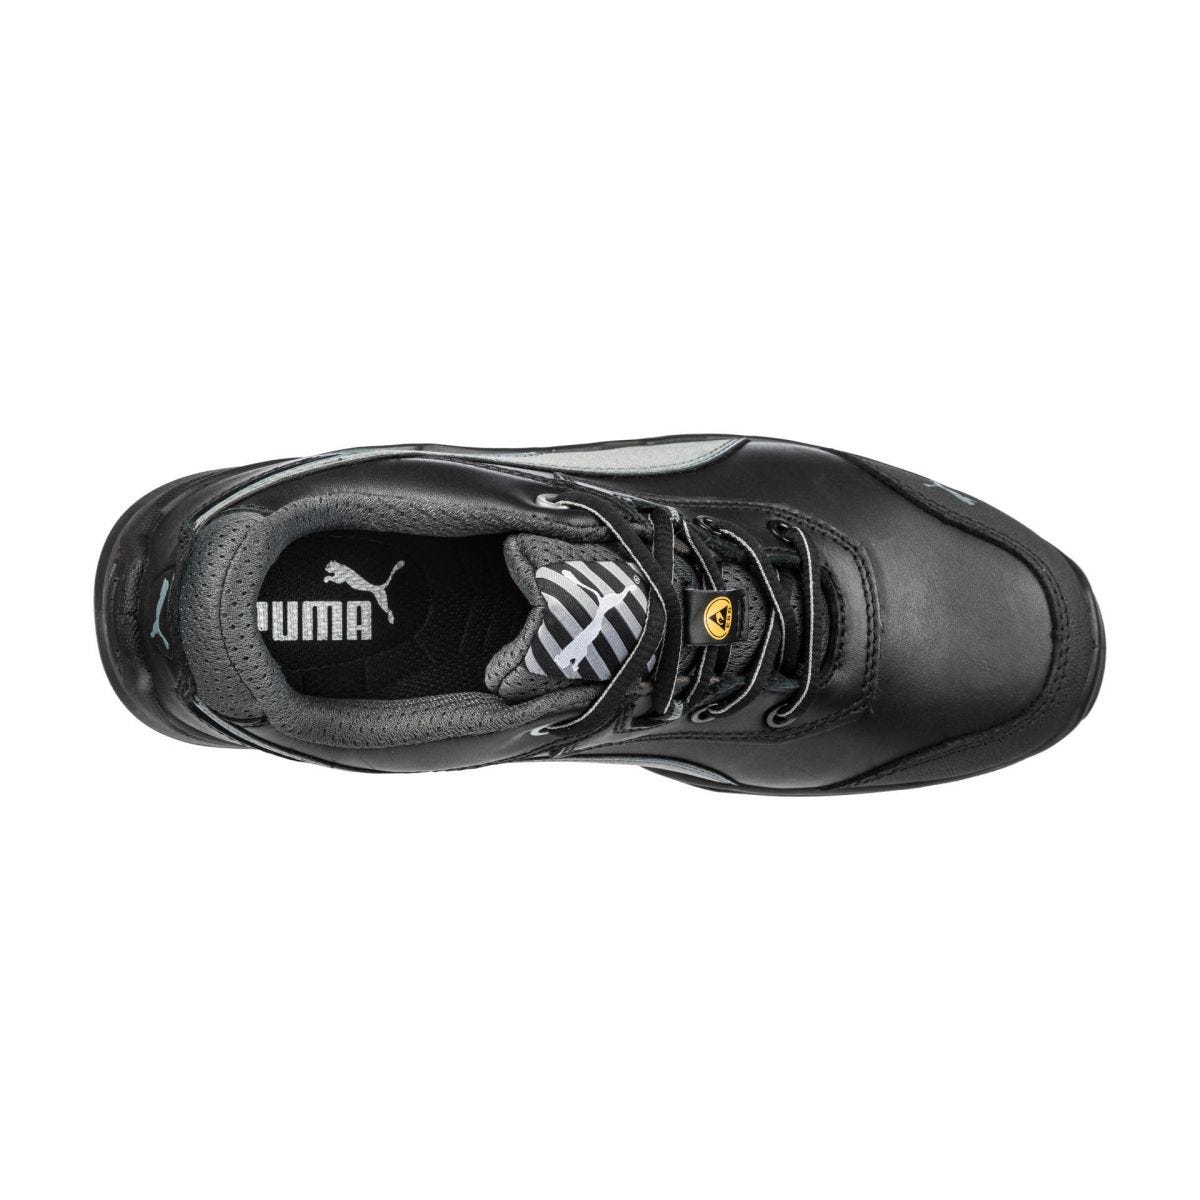 Chaussures de sécurité Argon RX low S3 ESD SRC noir - Puma - Taille 48 3